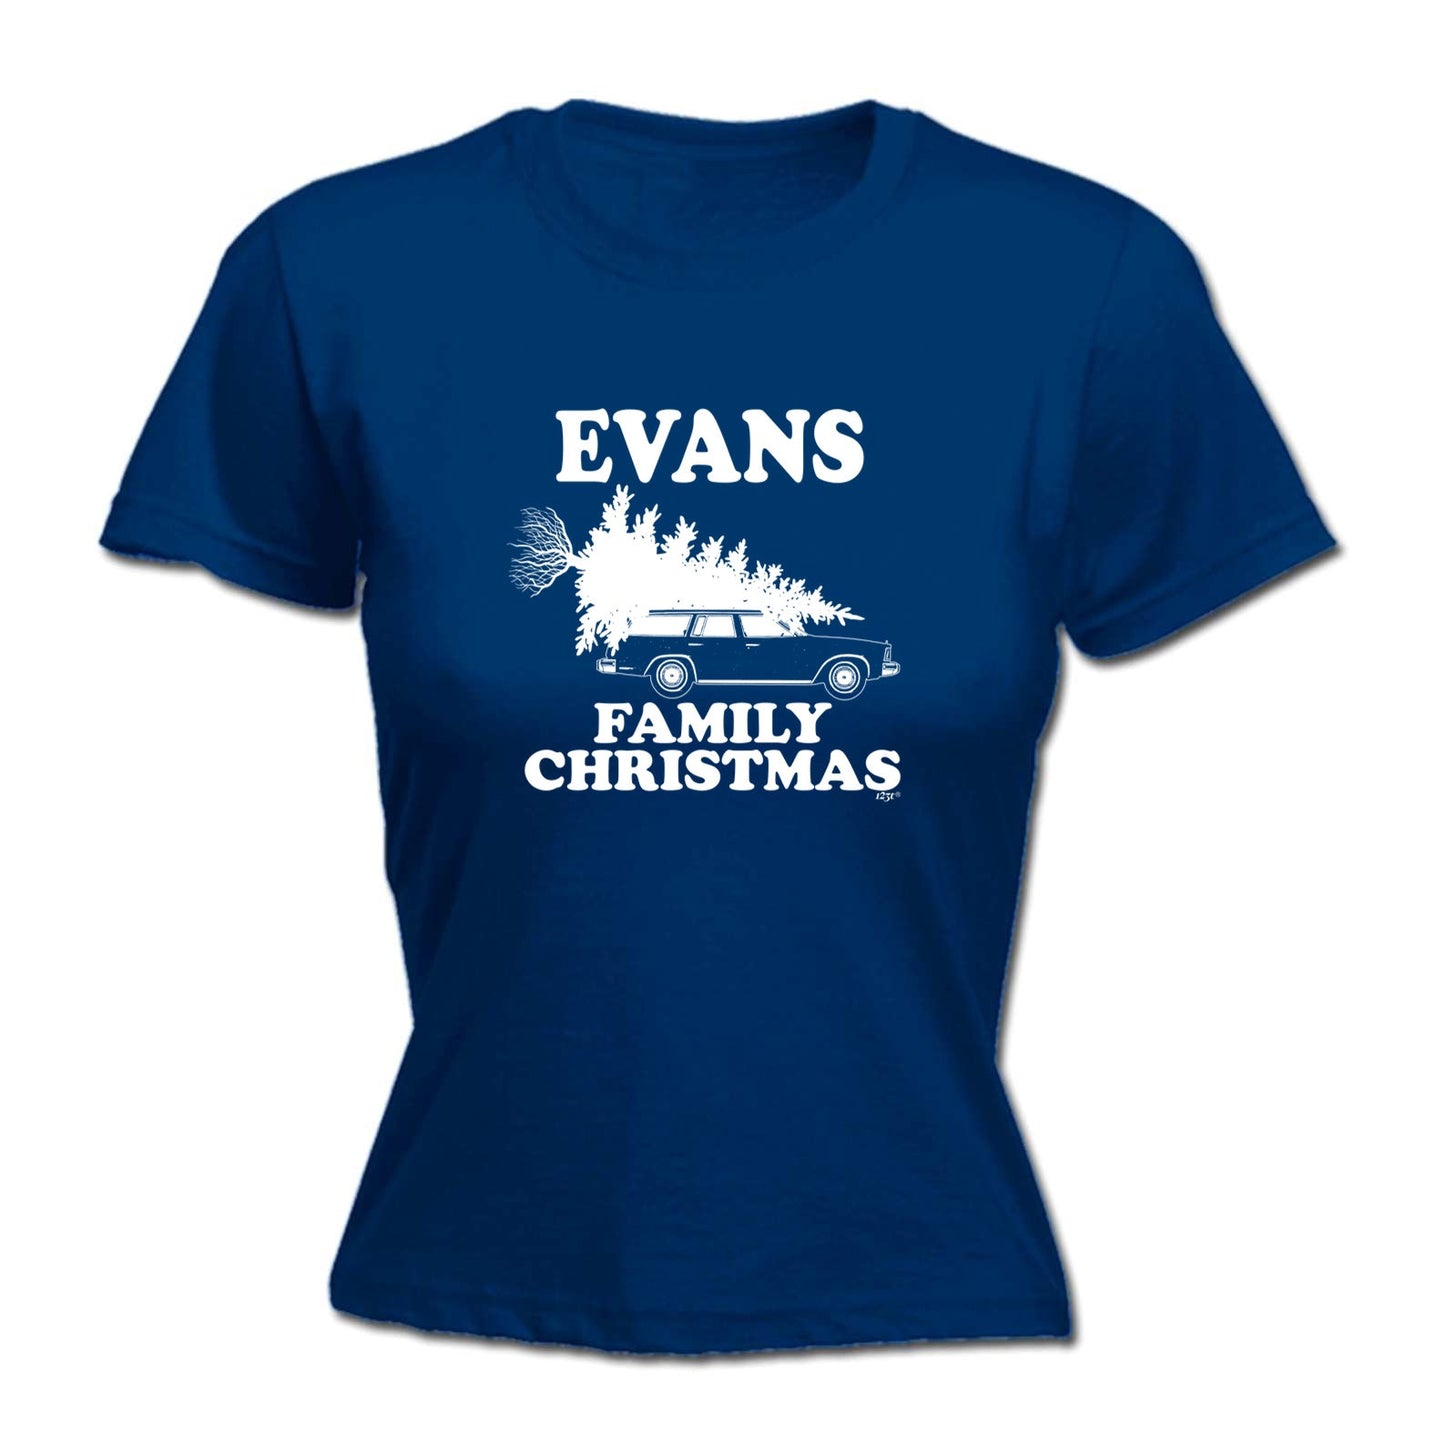 Family Christmas Evans - Xmas Novelty Womens T-Shirt Tshirt